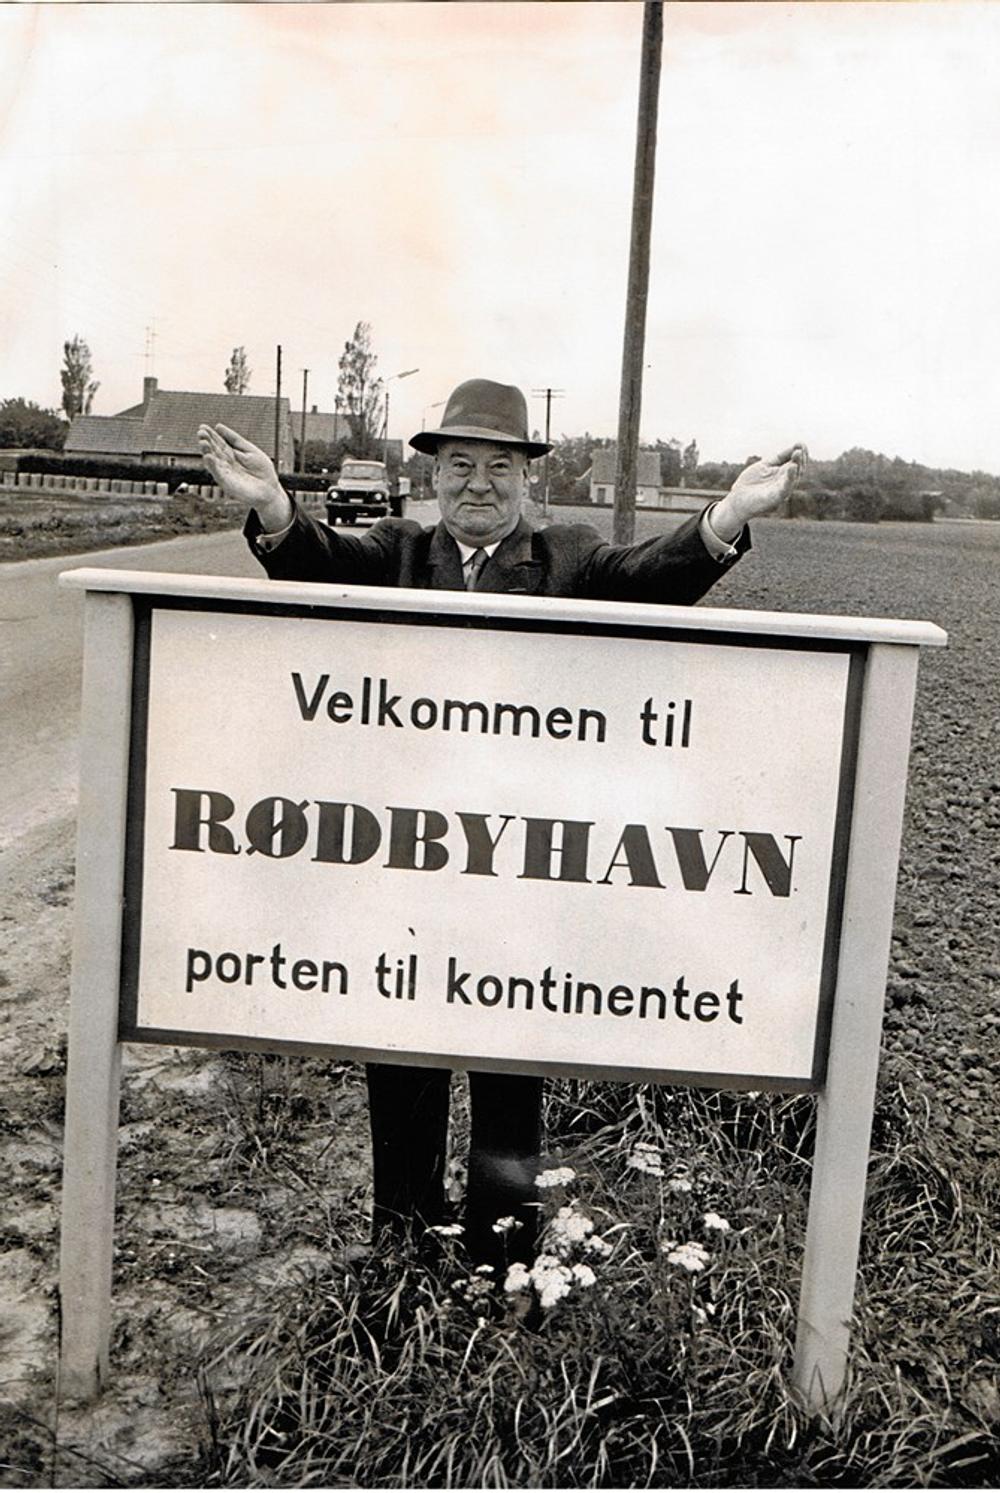 Den søvnige provinsflække Rødby så store muligheder i sin nye rolle som porten til Europa. Her en begejstret borgmester A. Michelsen.